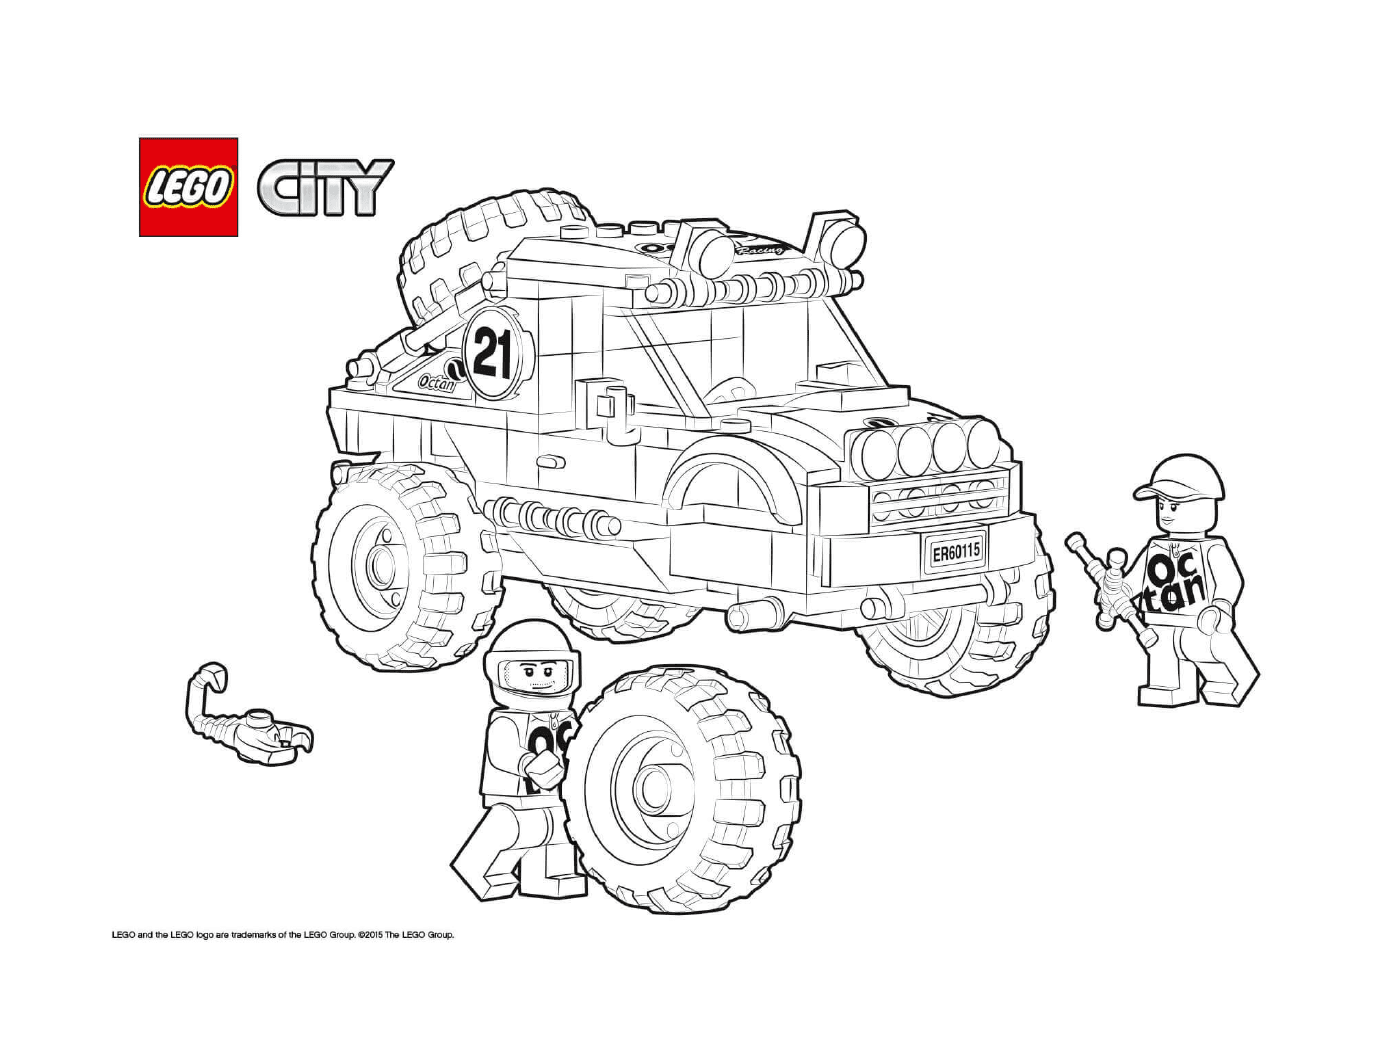  Ciudad de Lego todo terreno 4x4 